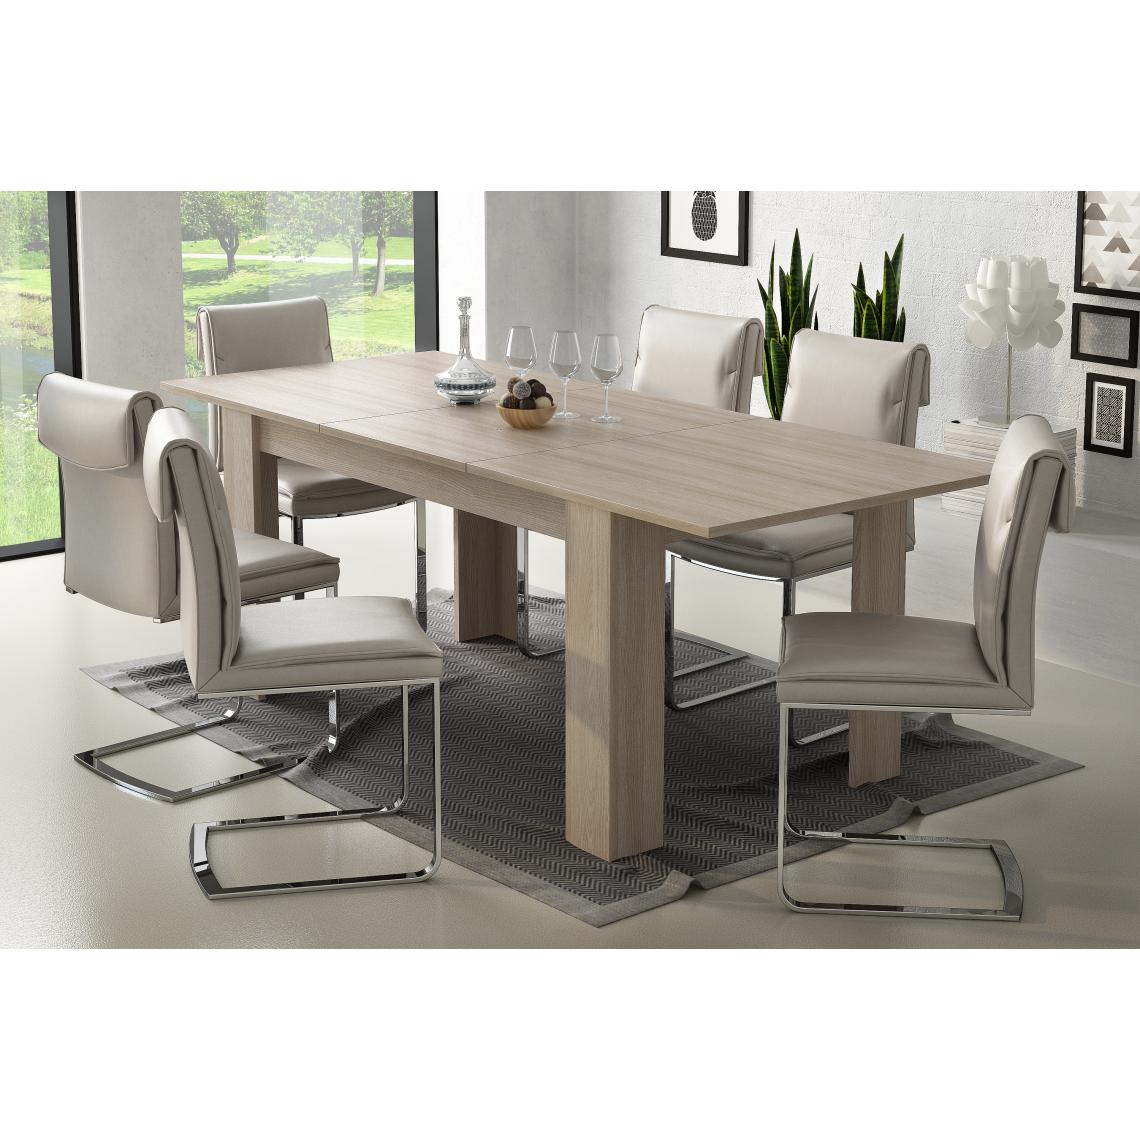 Alter - Table péninsule de cuisine avec 4 étagères, Meuble bar, Table haute auxiliaire, 112x49xh106 cm, Couleur Blanc et Ciment - Tables à manger